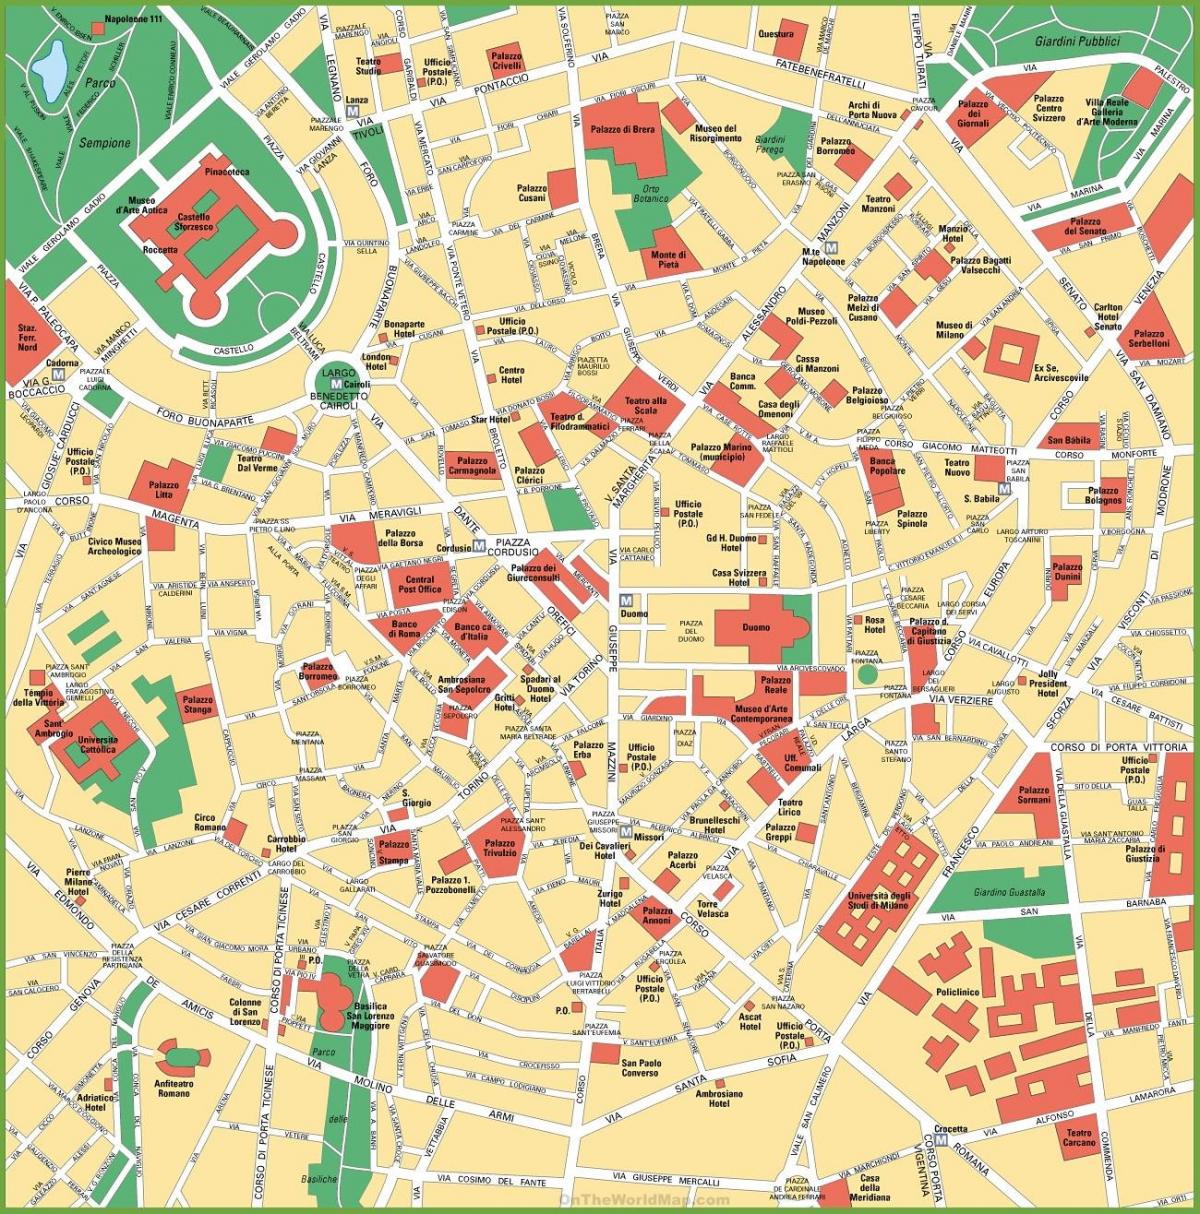 χάρτης της πόλης του μιλάνου, ιταλία